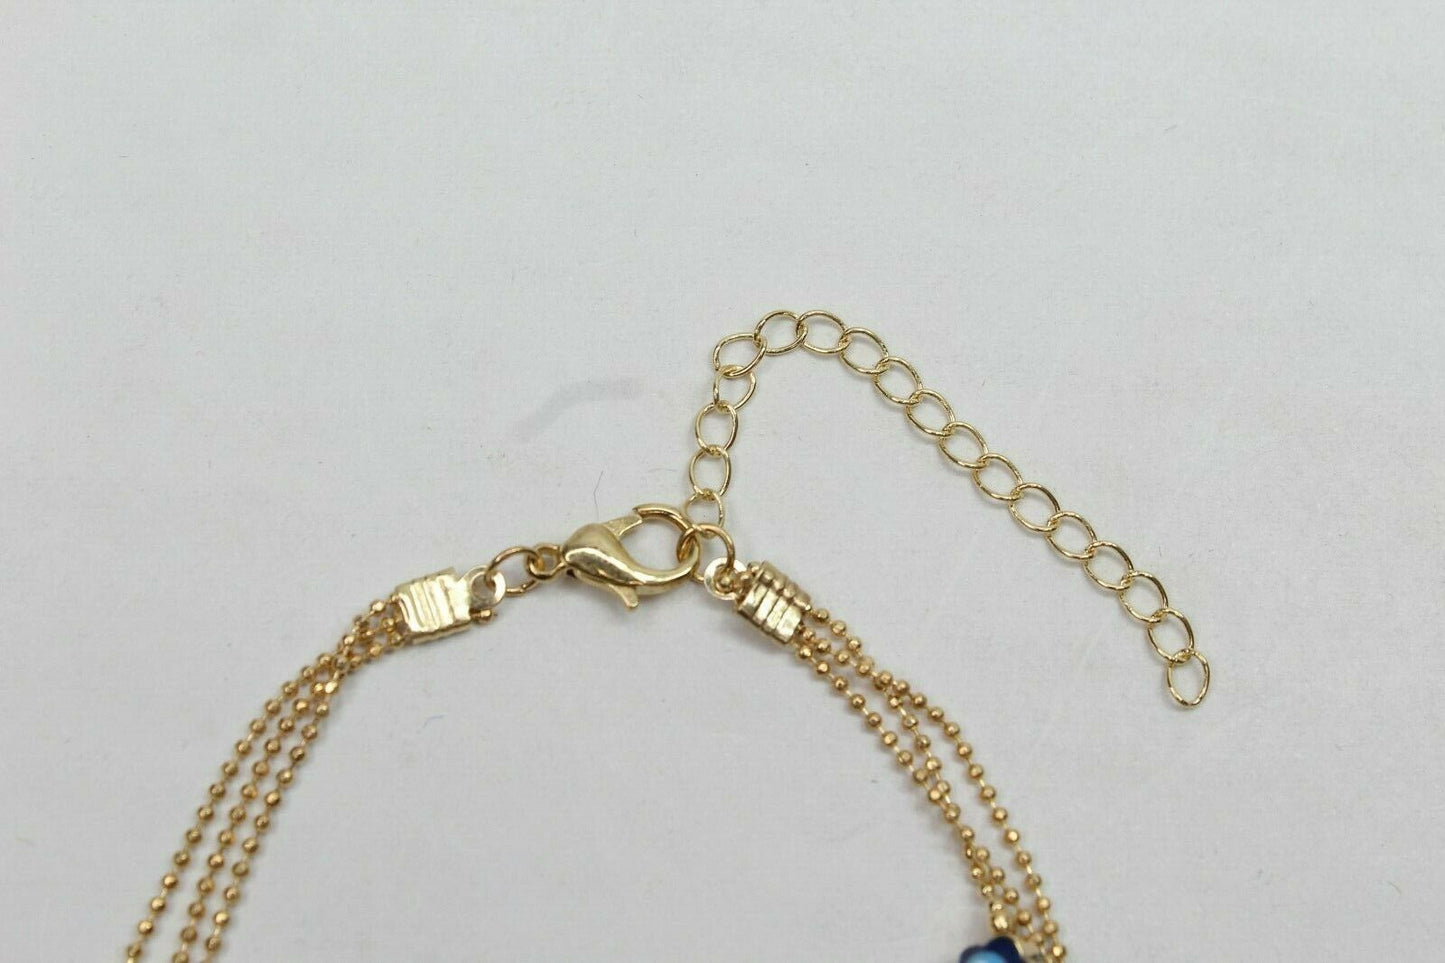 Golden Ball Chain Bangle 3 Layer Evil Eye Bracelet Anklets